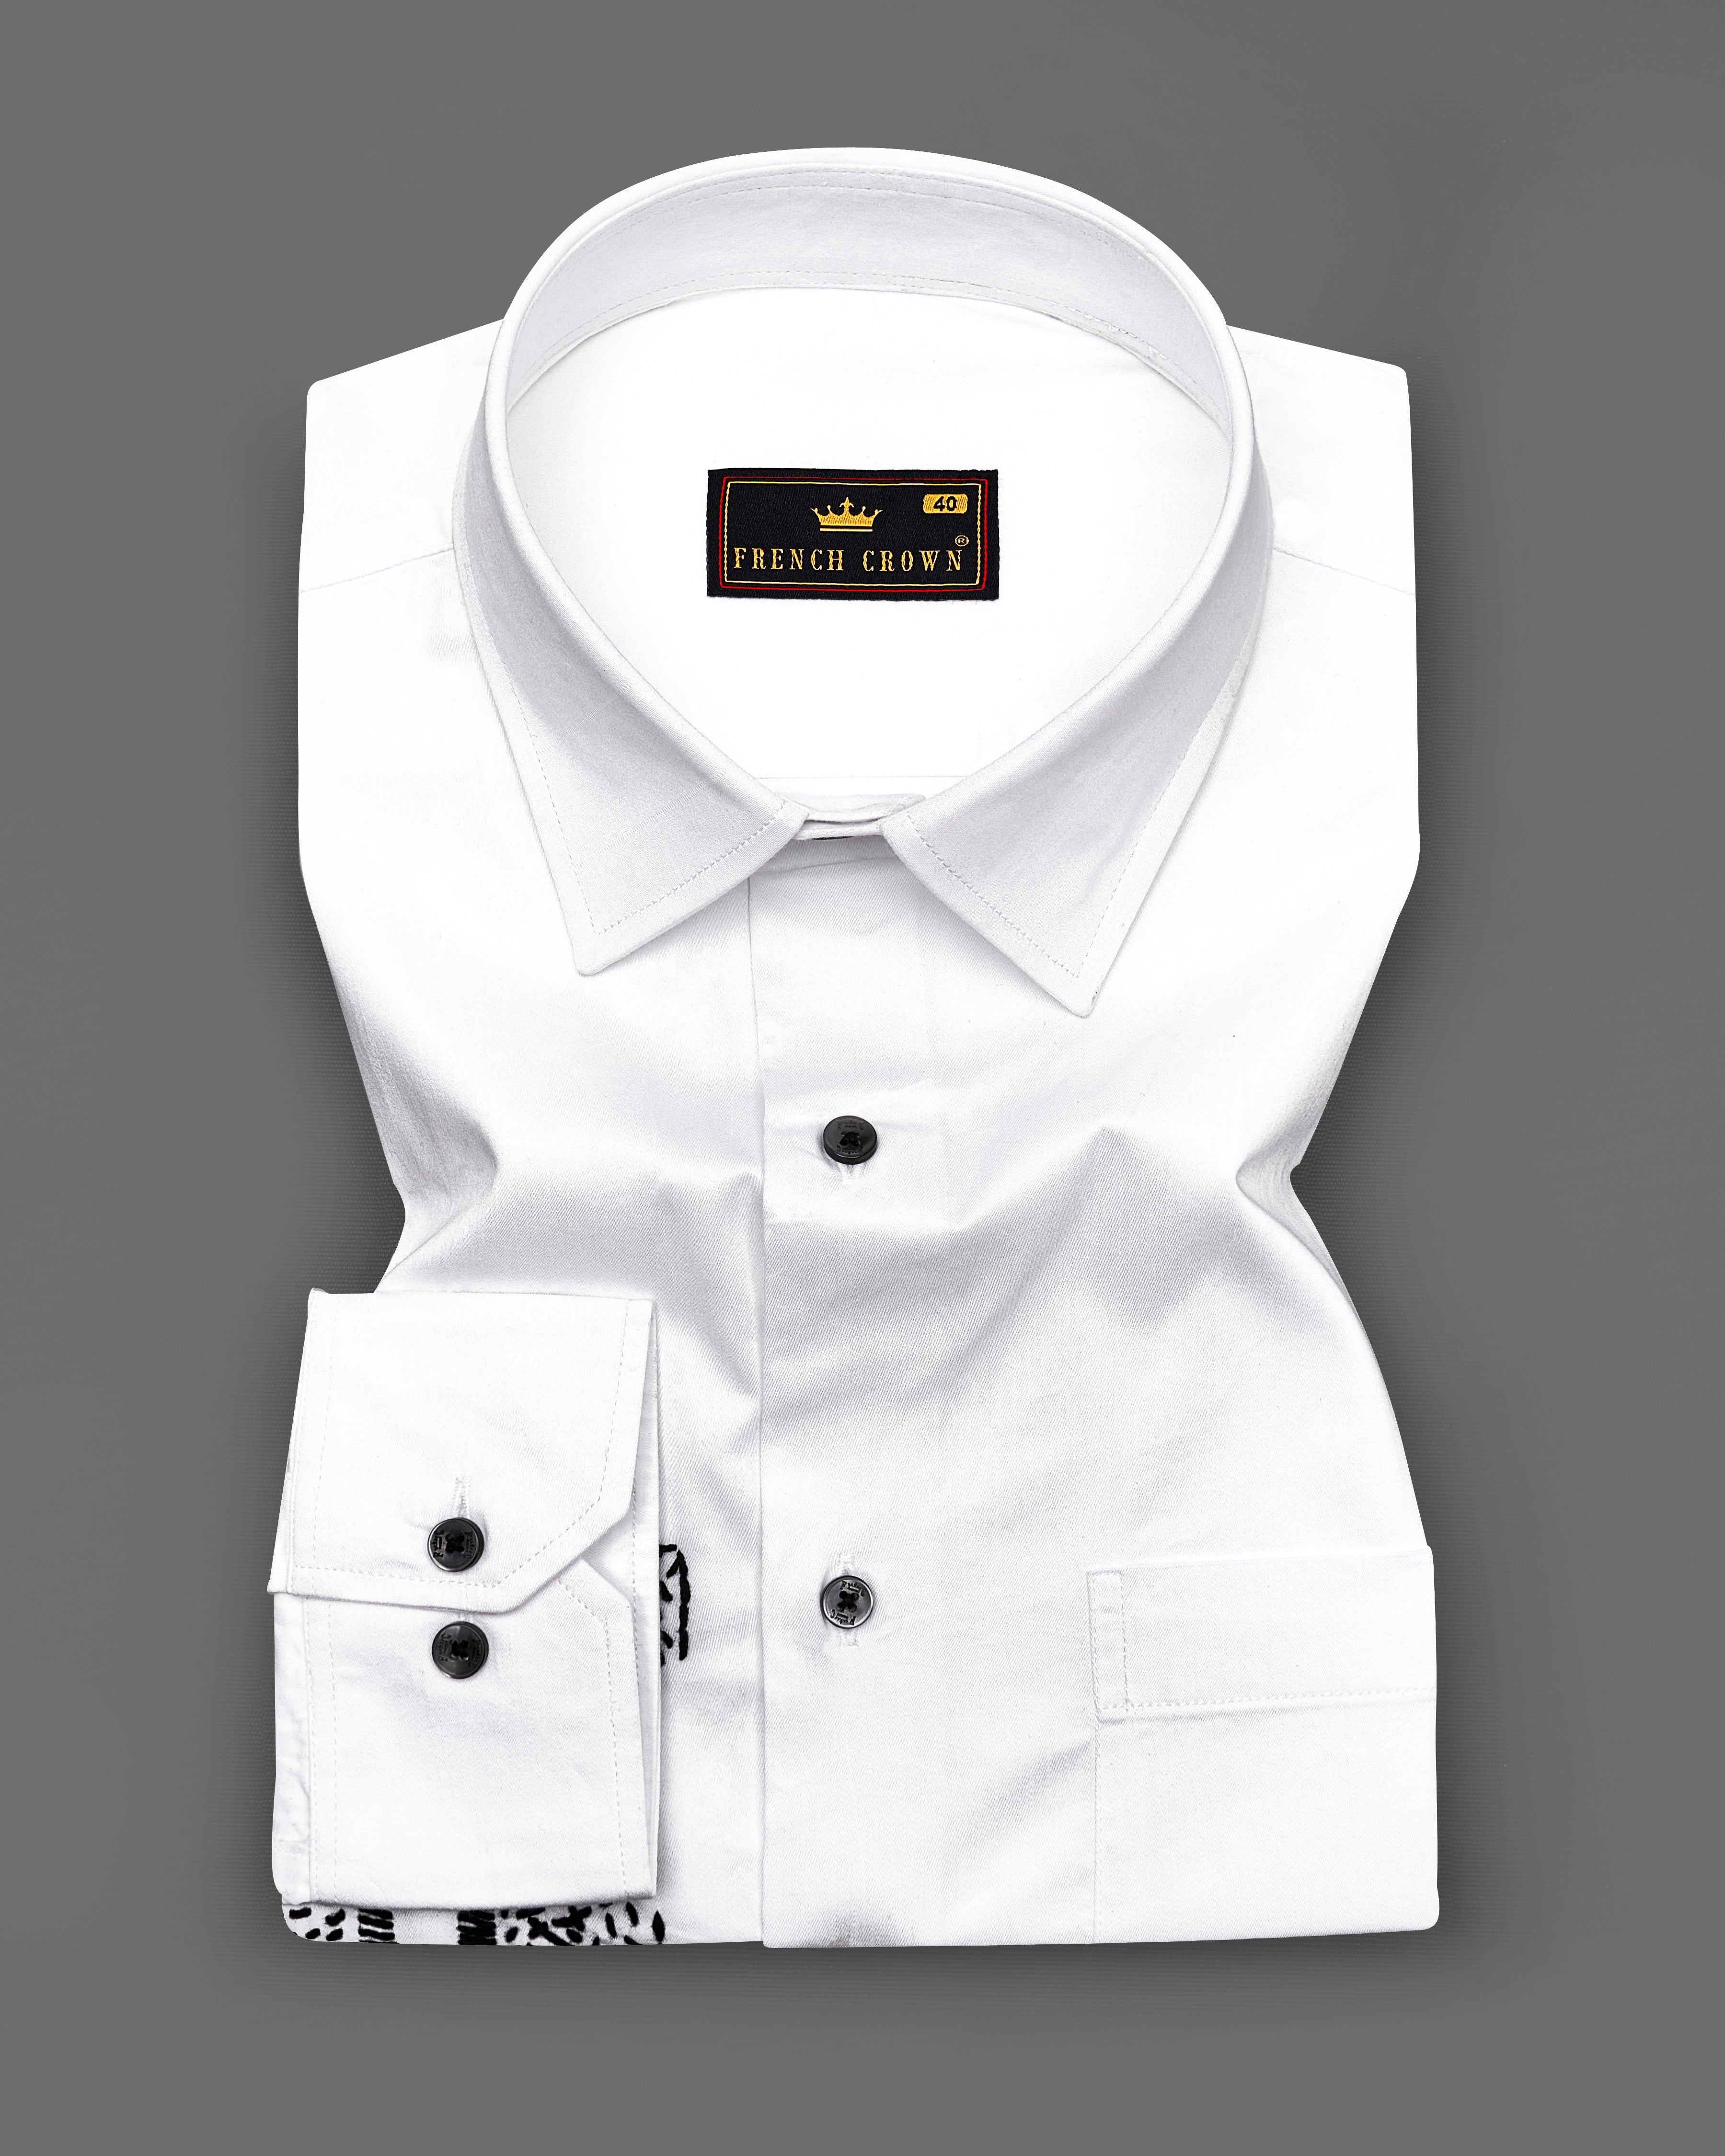 Bright White Subtle Sheen with Black Embroidered Super Soft Premium Cotton Shirt 1062-BLK-E020-38,1062-BLK-E020-H-38,1062-BLK-E020-39,1062-BLK-E020-H-39,1062-BLK-E020-40,1062-BLK-E020-H-40,1062-BLK-E020-42,1062-BLK-E020-H-42,1062-BLK-E020-44,1062-BLK-E020-H-44,1062-BLK-E020-46,1062-BLK-E020-H-46,1062-BLK-E020-48,1062-BLK-E020-H-48,1062-BLK-E020-50,1062-BLK-E020-H-50,1062-BLK-E020-52,1062-BLK-E020-H-52